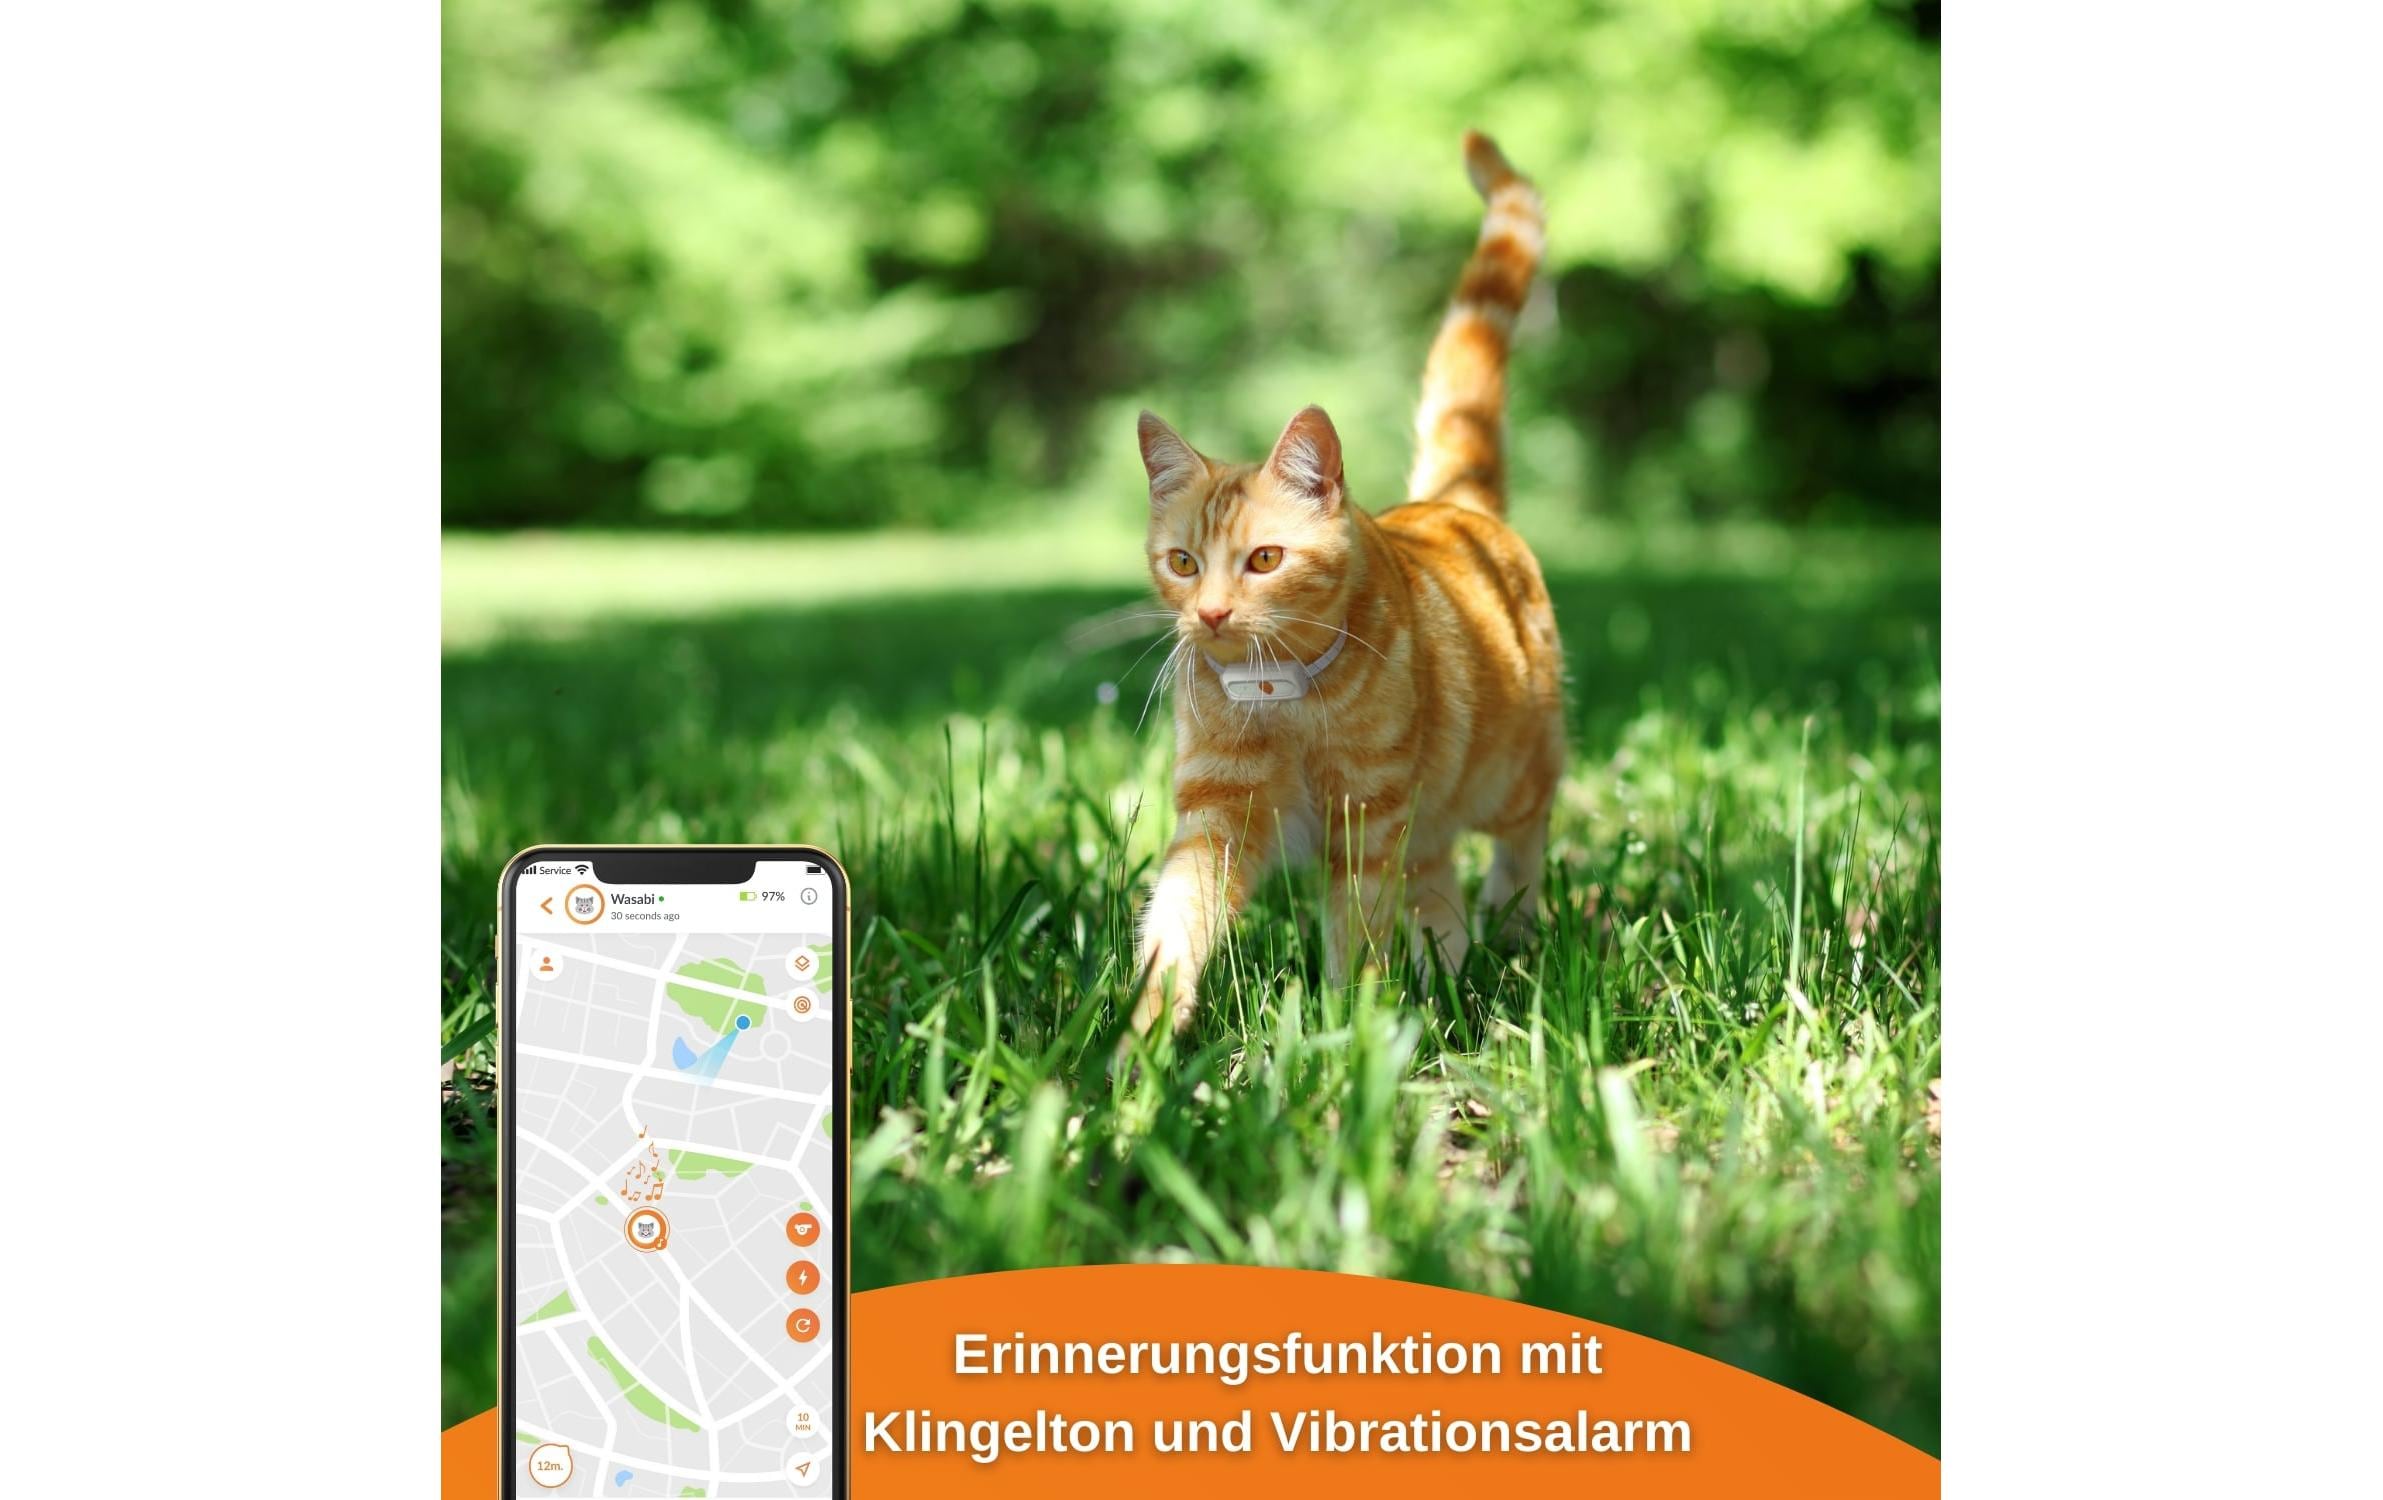 Weenect GPS-Tracker XS für Katzen, Weiss